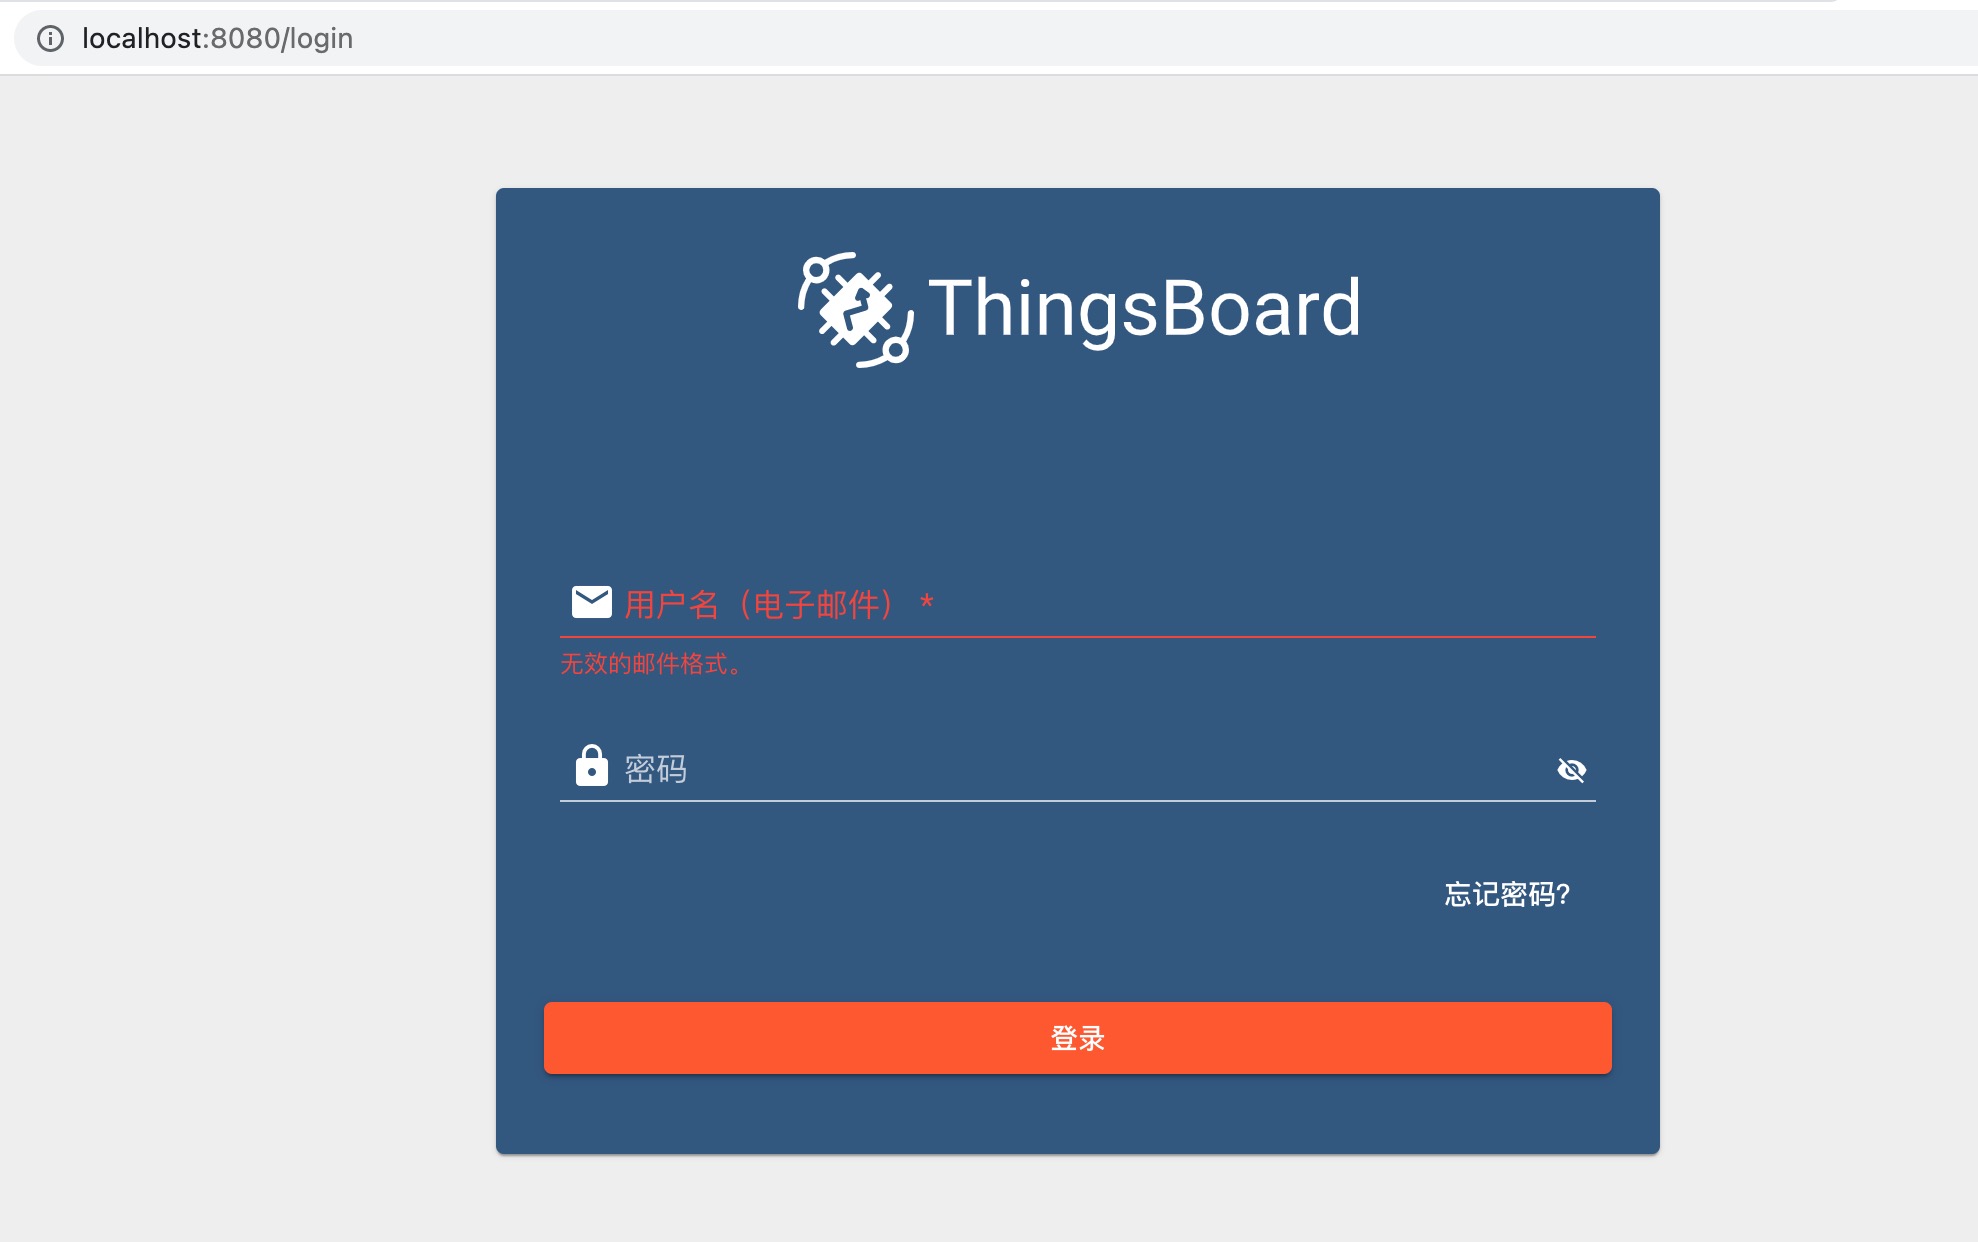 "ThingsBorad 登录页面"